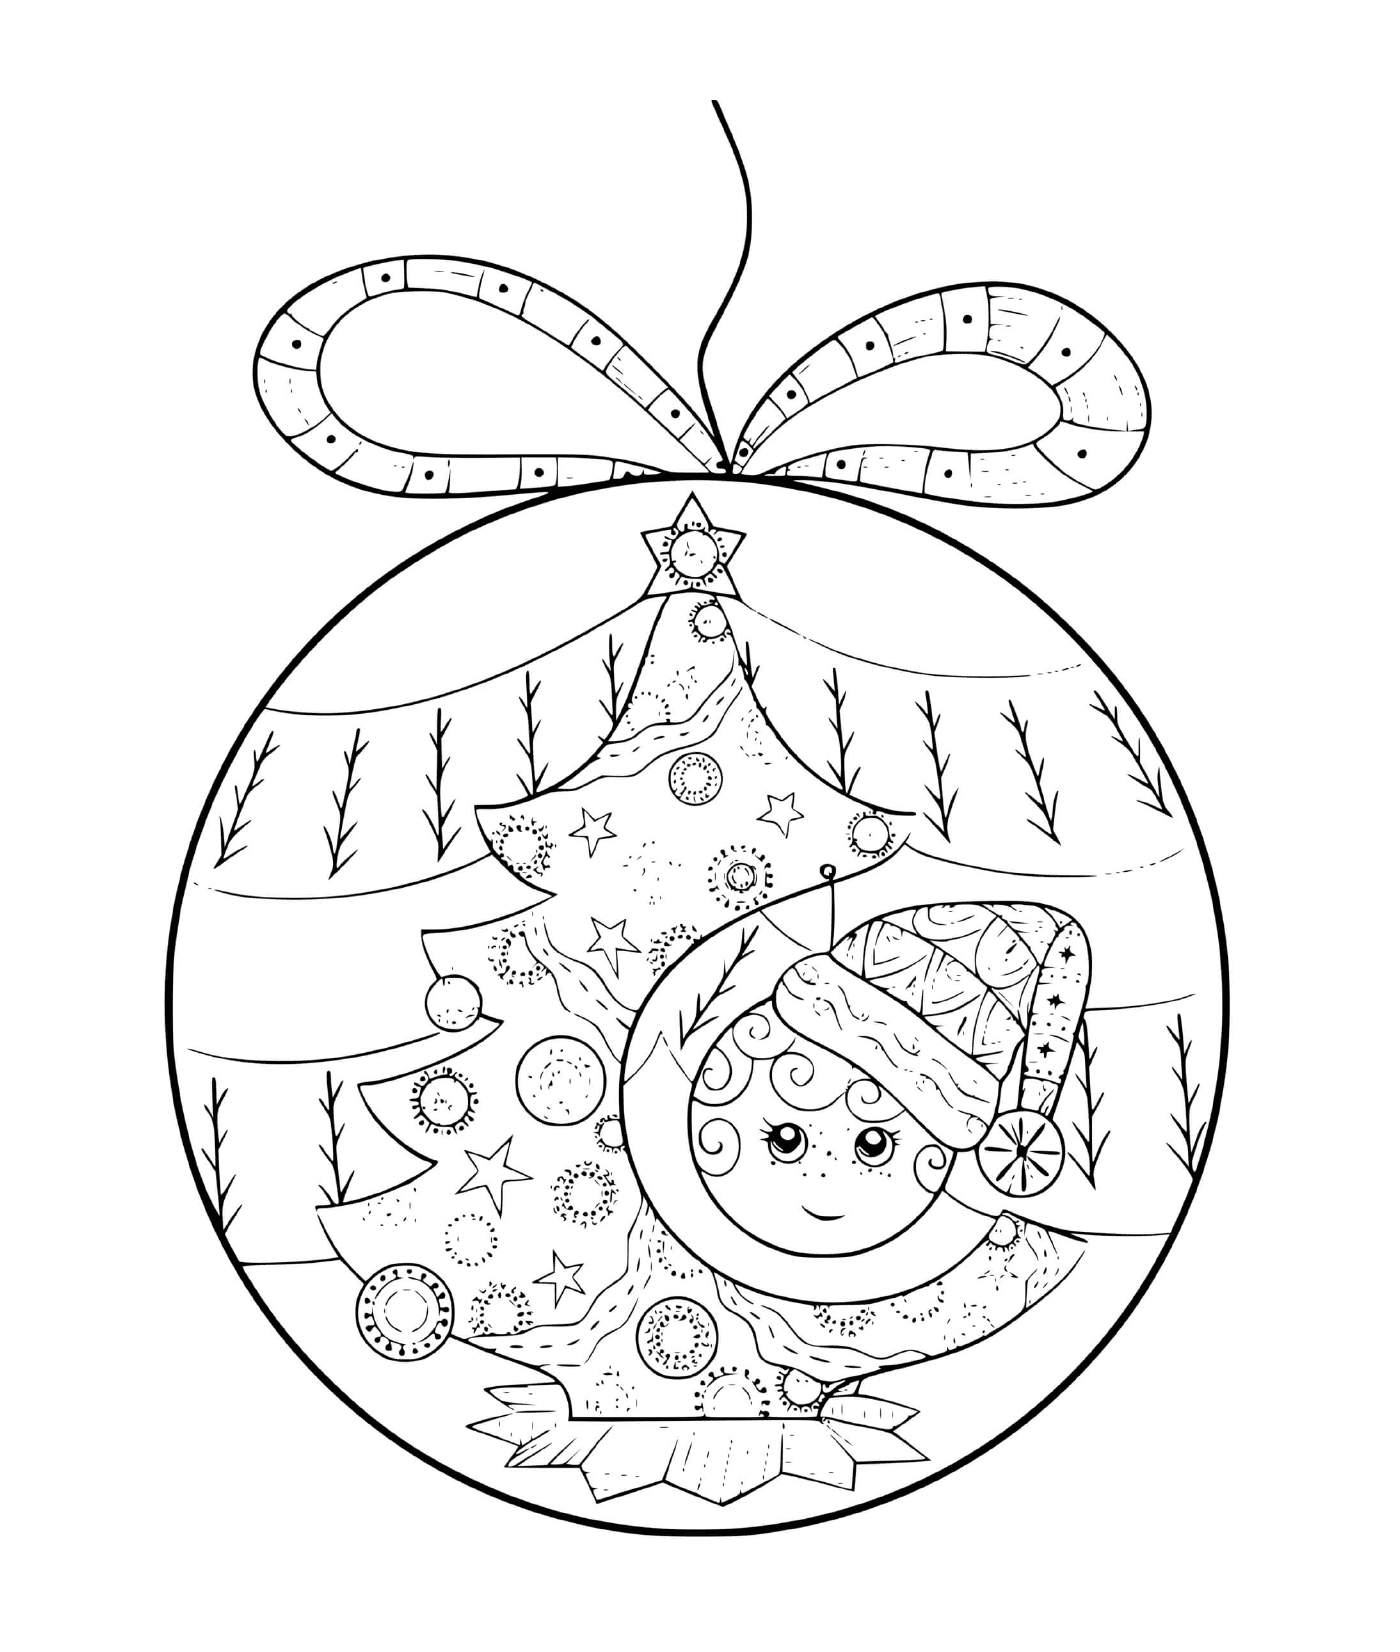  Un baile de Navidad con un niño y un árbol 